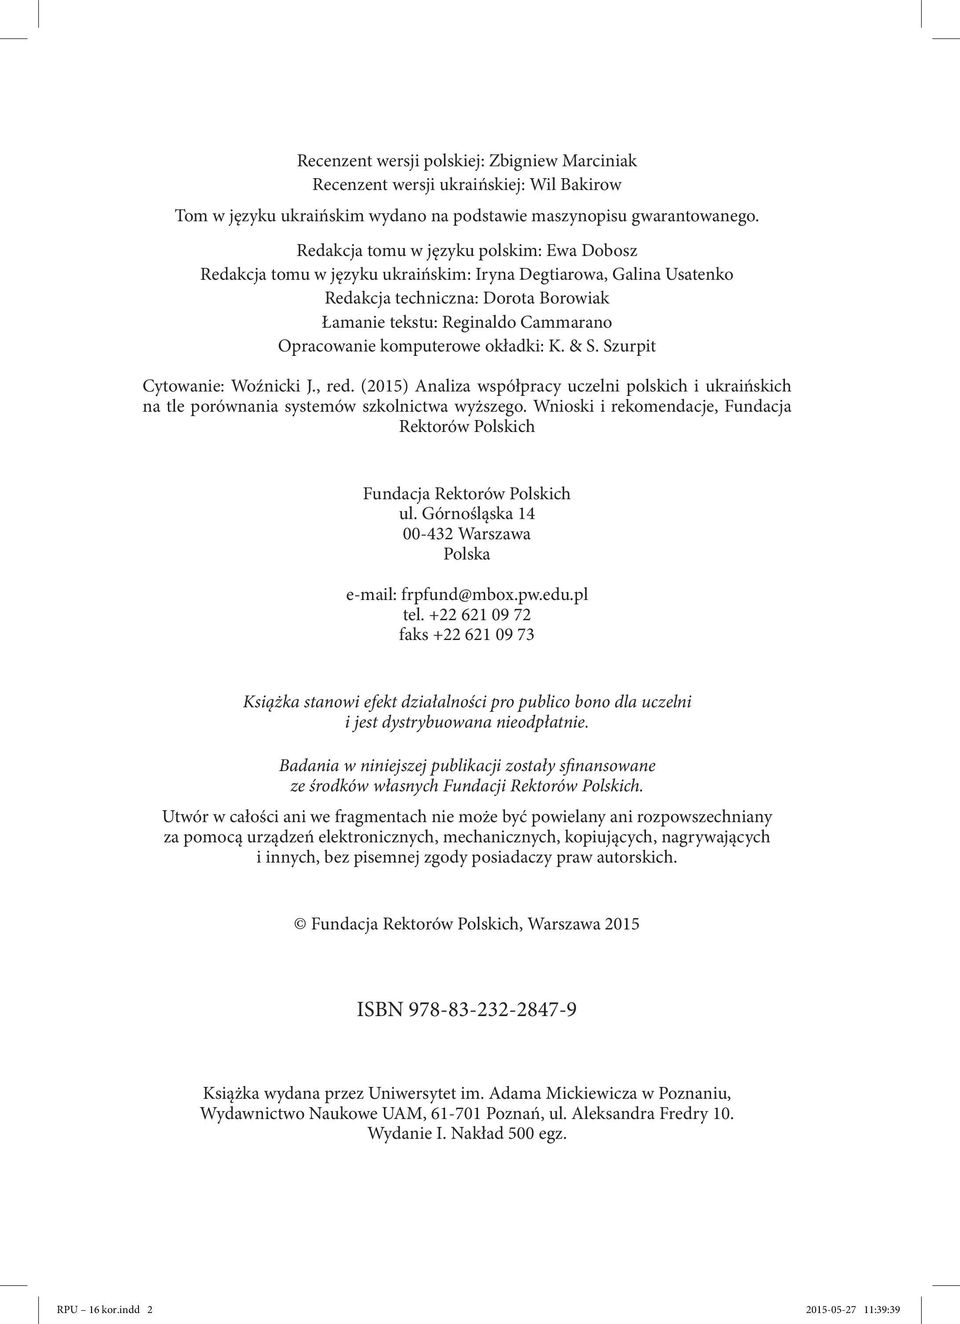 komputerowe okładki: K. & S. Szurpit Cytowanie: Woźnicki J., red. (2015) Analiza współpracy uczelni polskich i ukraińskich na tle porównania systemów szkolnictwa wyższego.